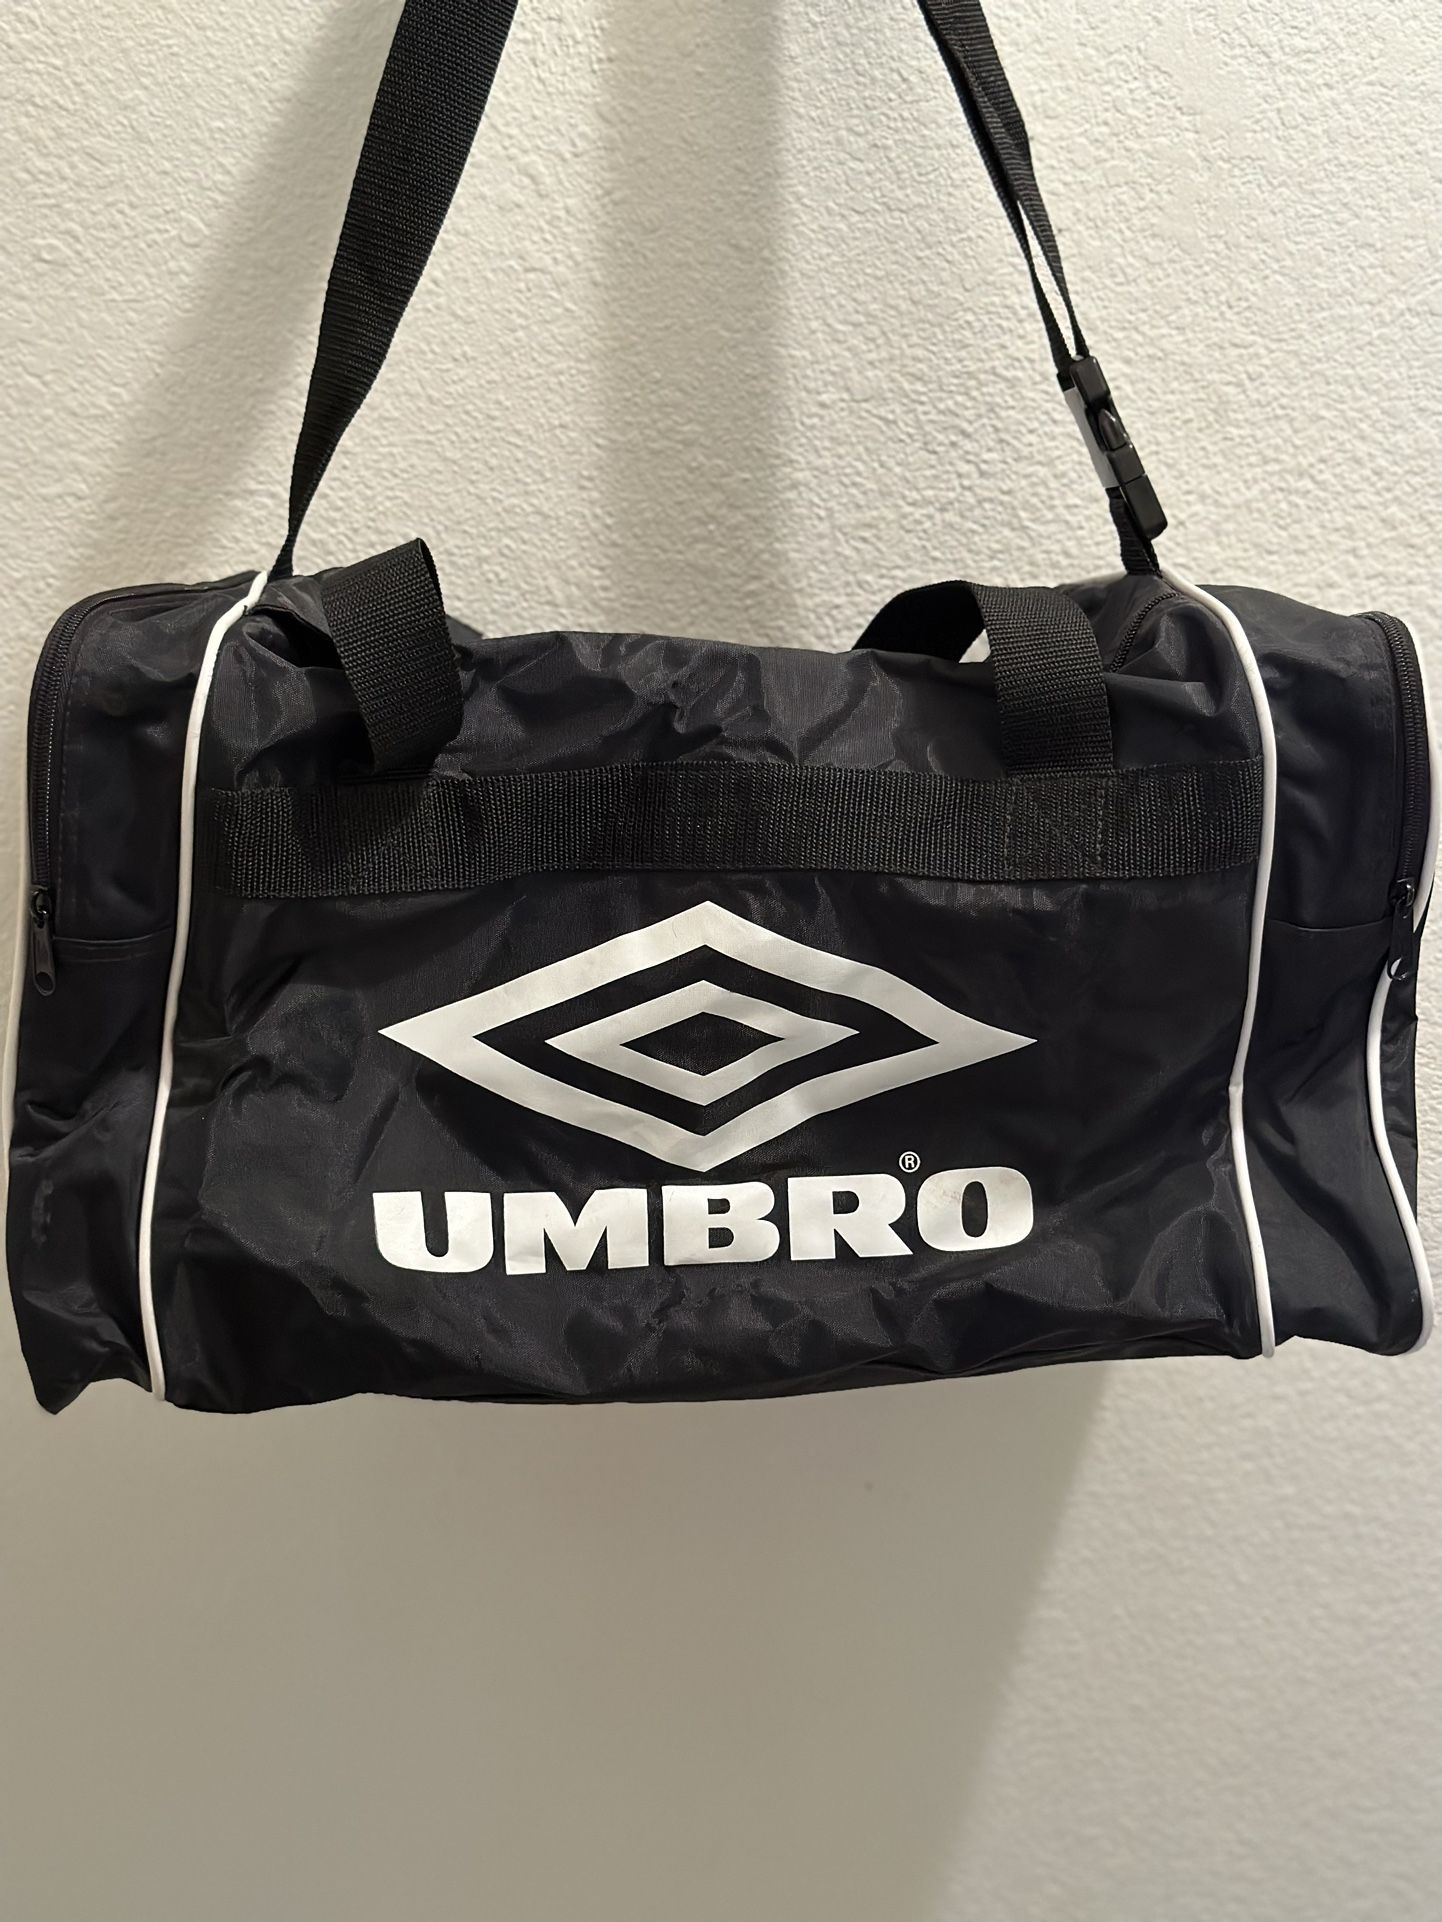 UMBRO Duffle Bag/Gym 